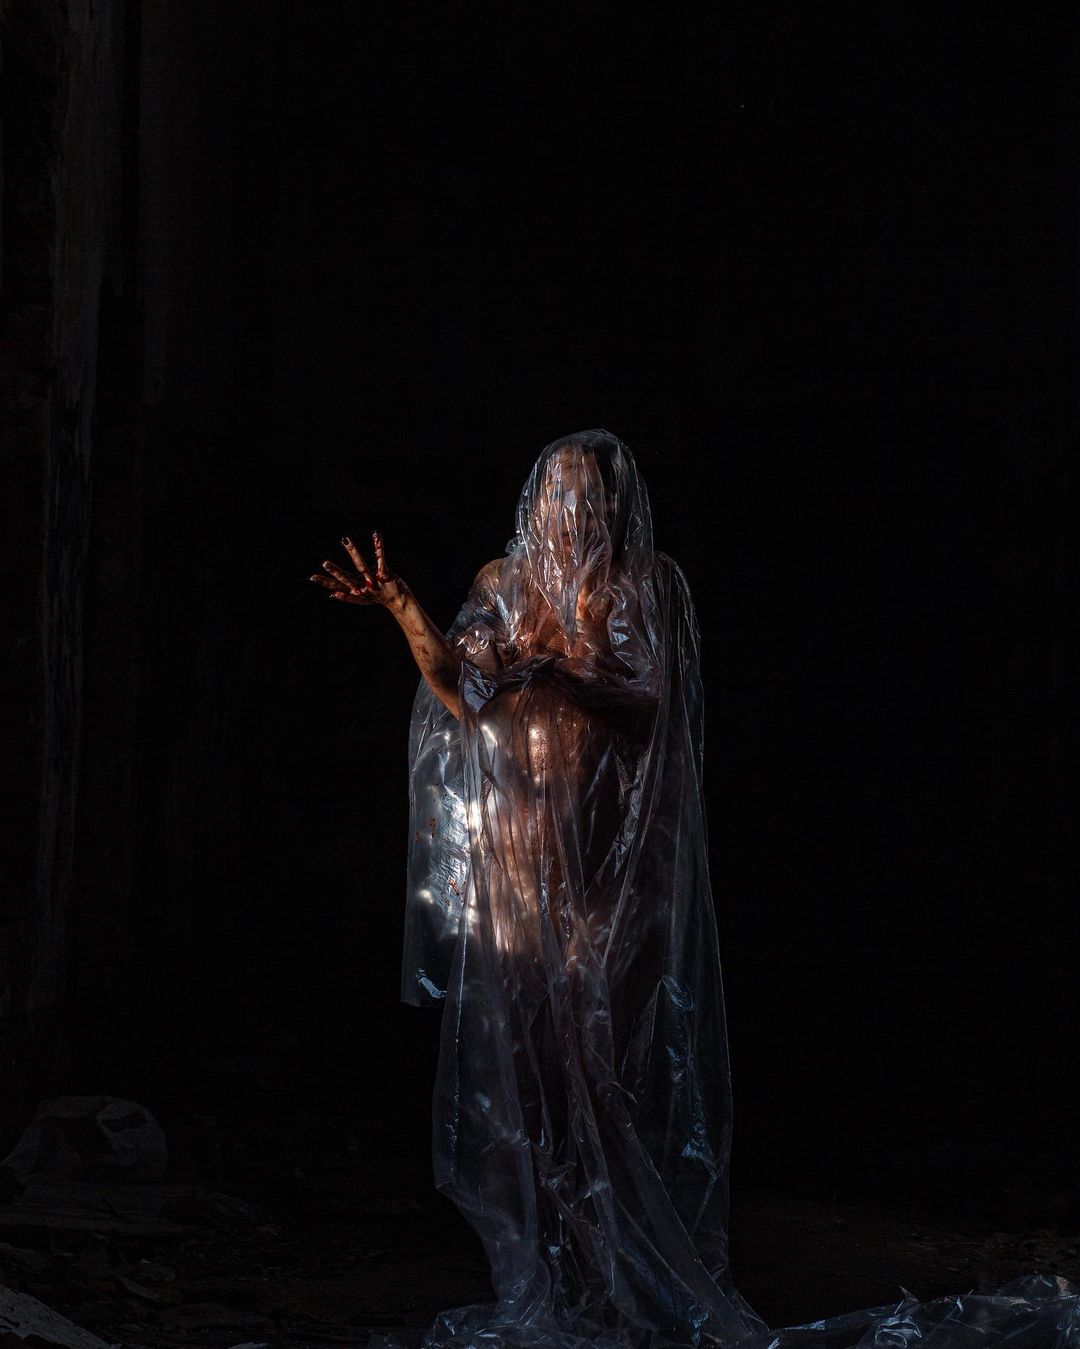 Разве преподаватель может снимать ужасы? Владимирский фотограф Алина Филатова доказывает это своим творчеством и объясняет, почему в каждом человеке живет древняя магия.